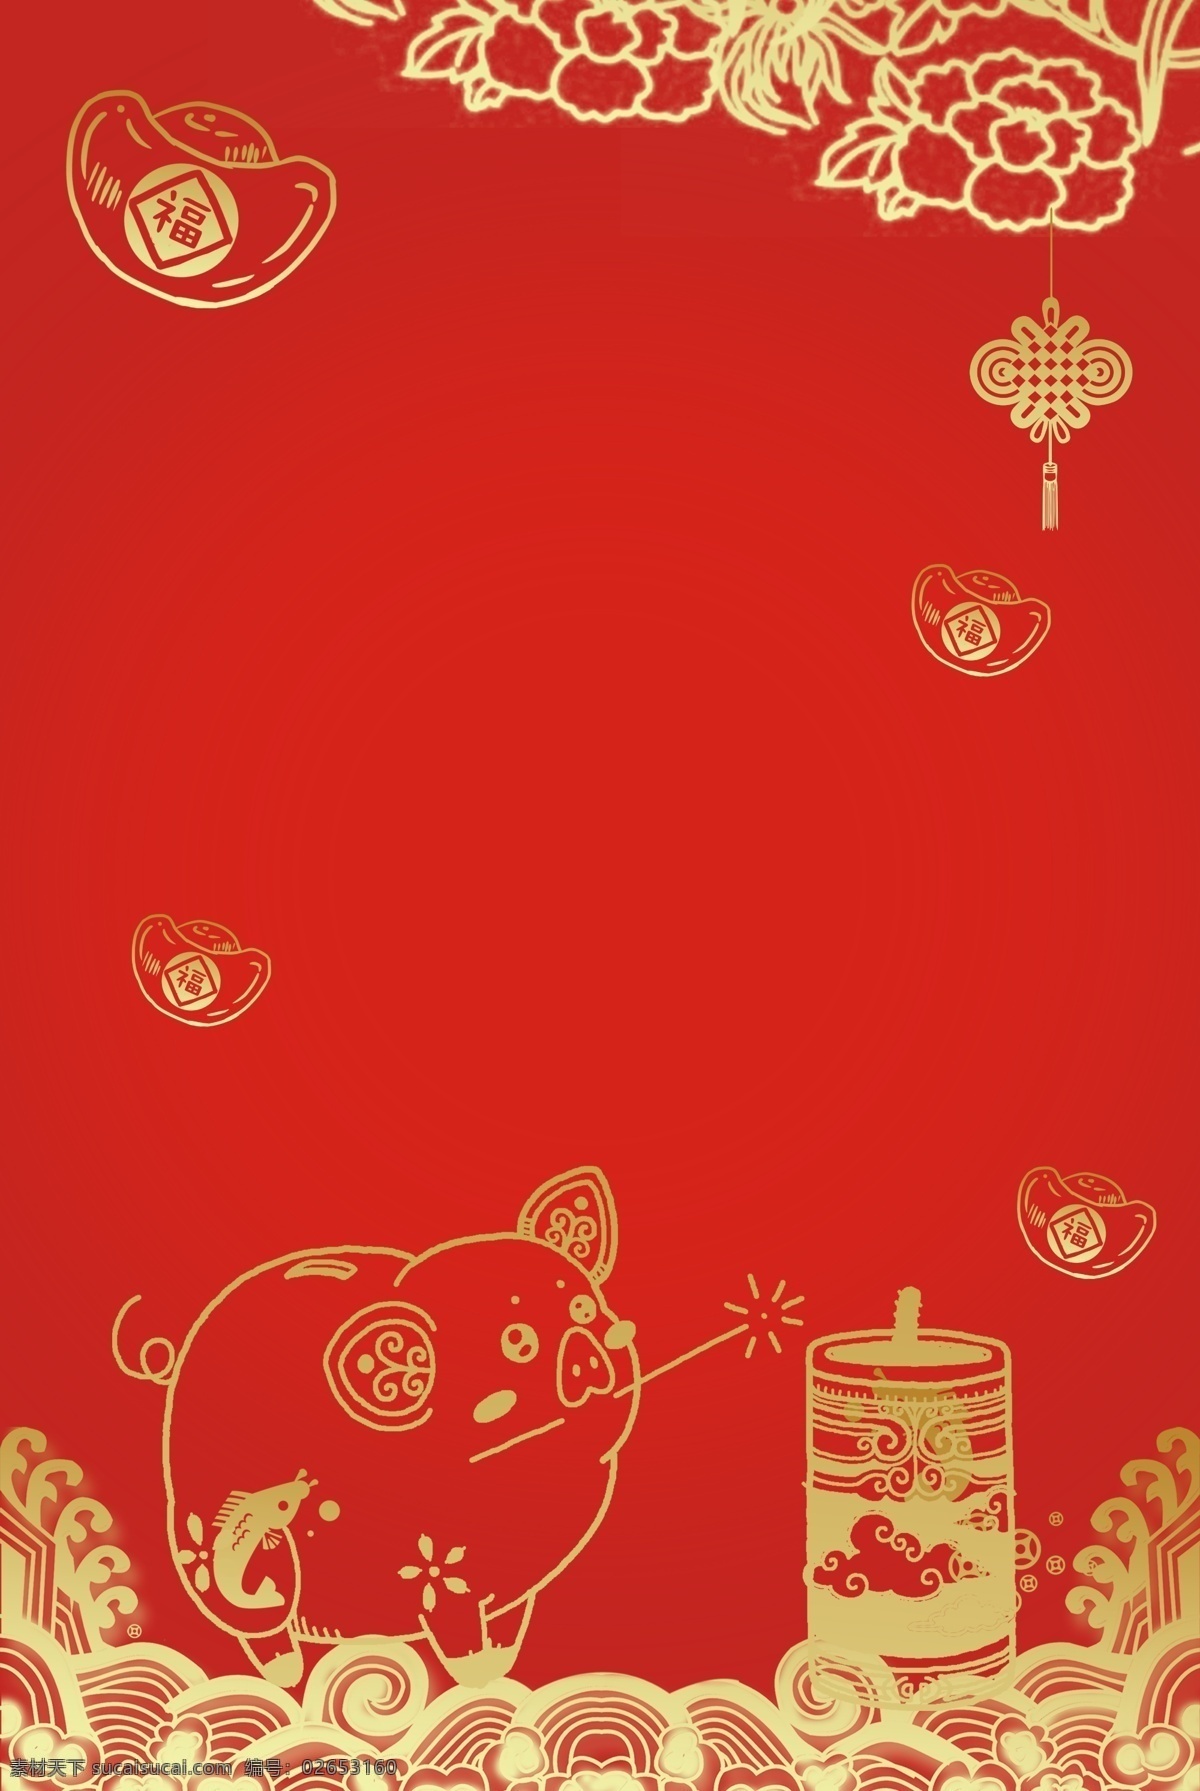 新年 签 红色 烫金 猪年 中国 风 背景 海报 新年签 红色烫金 中国风 新年背景 春节海报 元宝 花纹 中国结 浪花